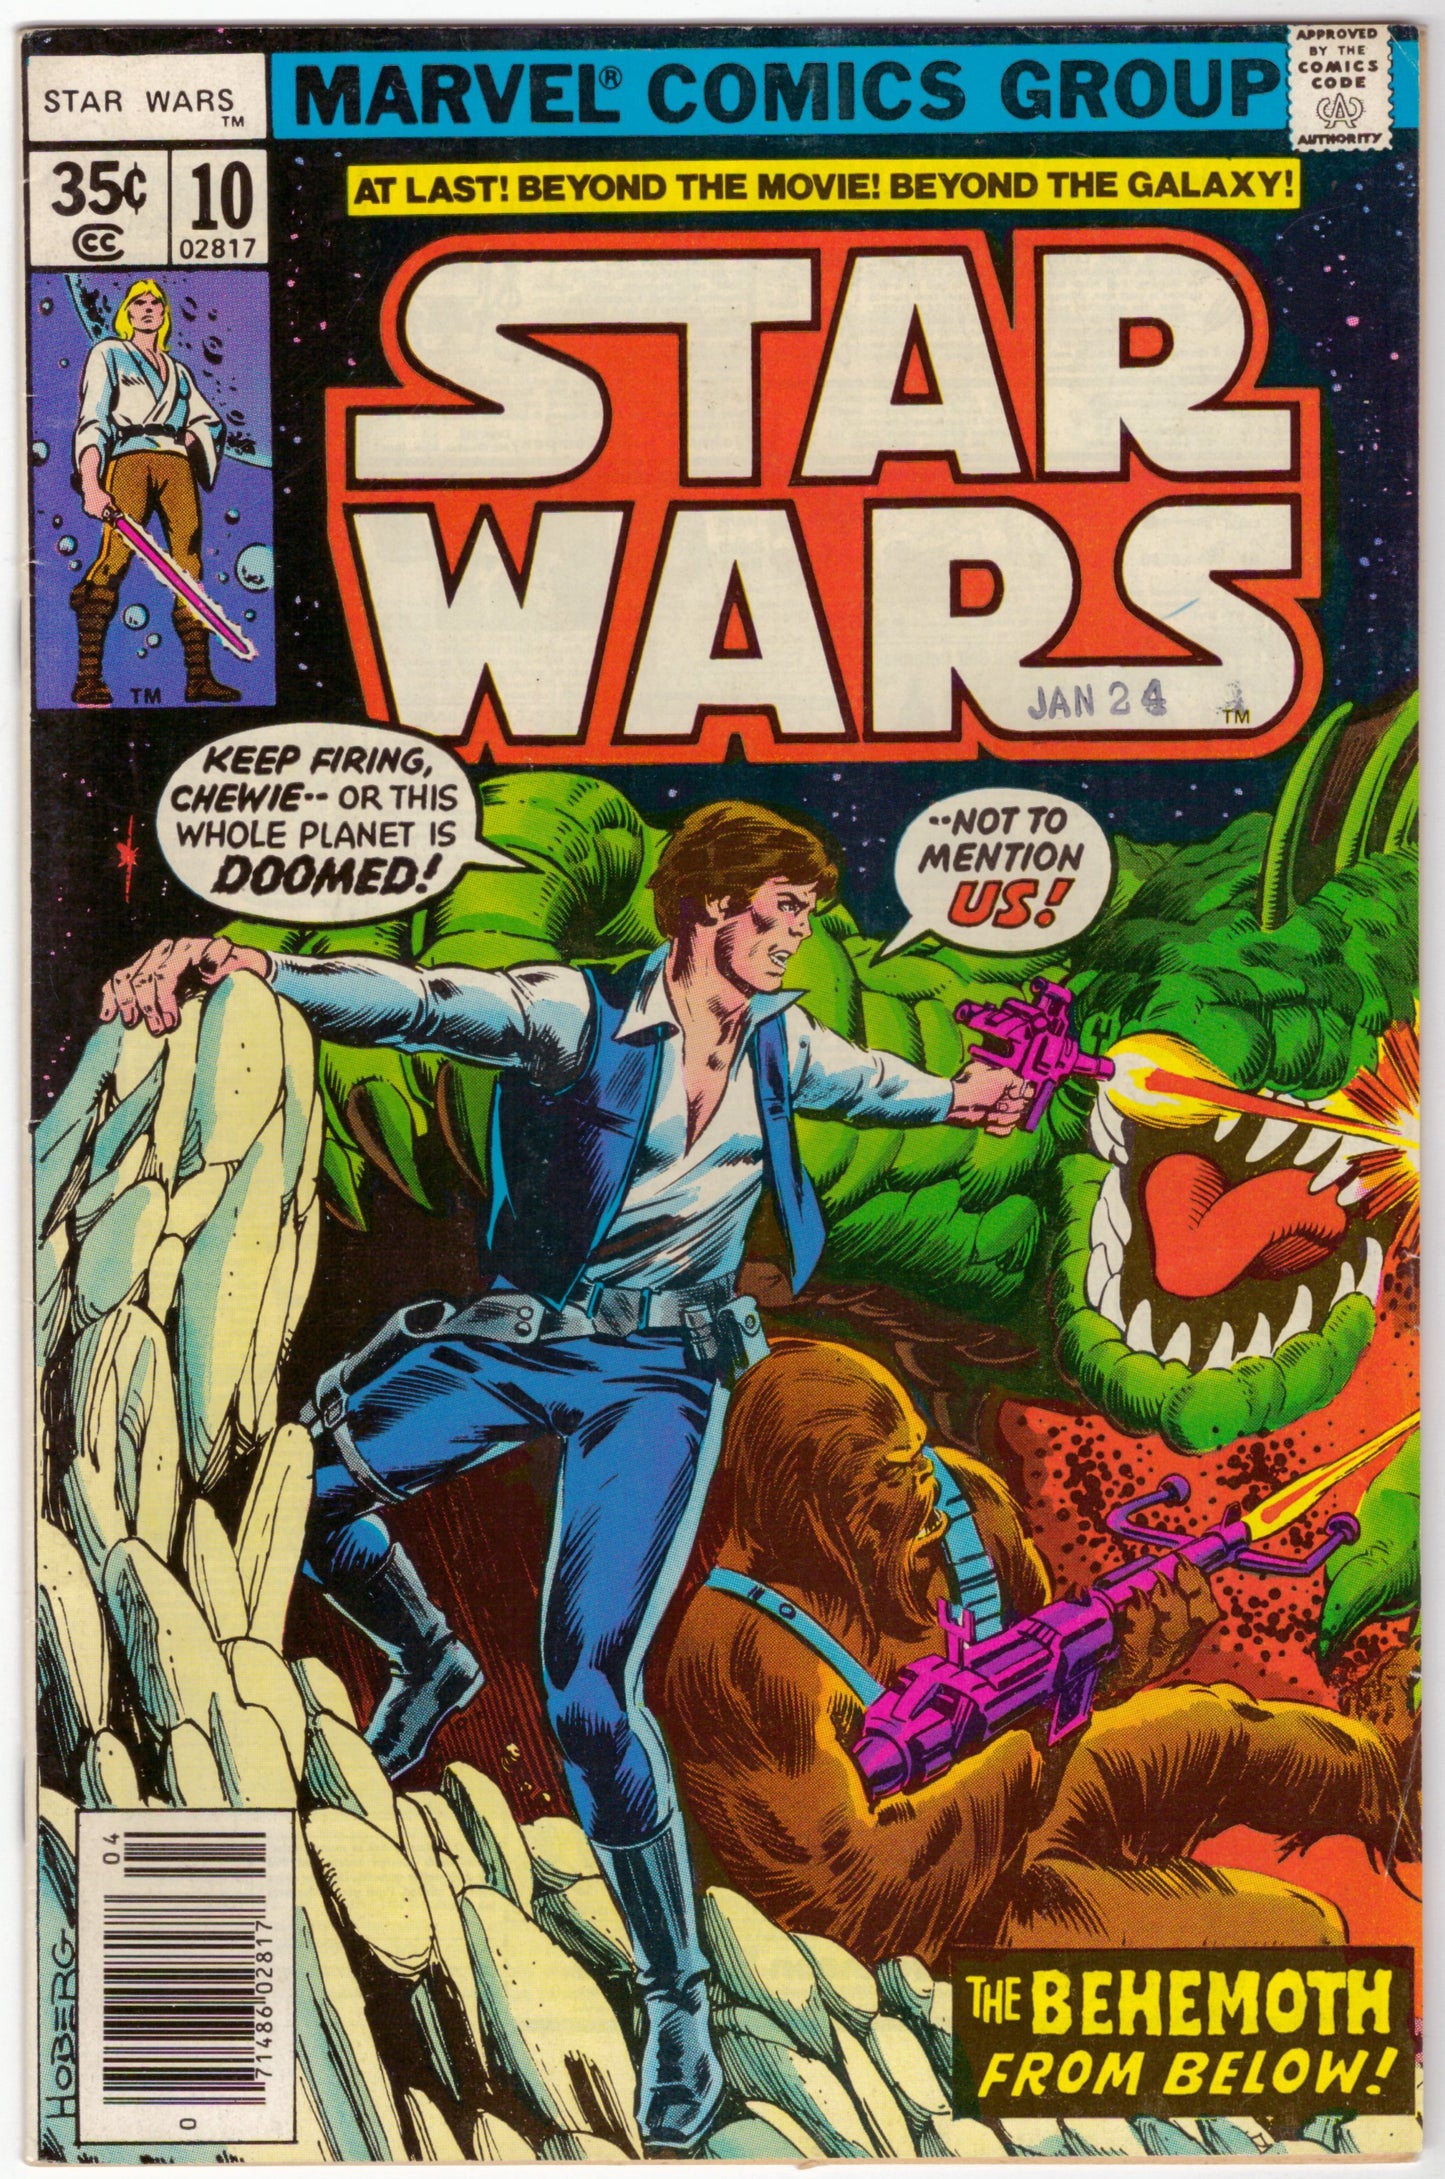 Guerres des étoiles (1977) # 10